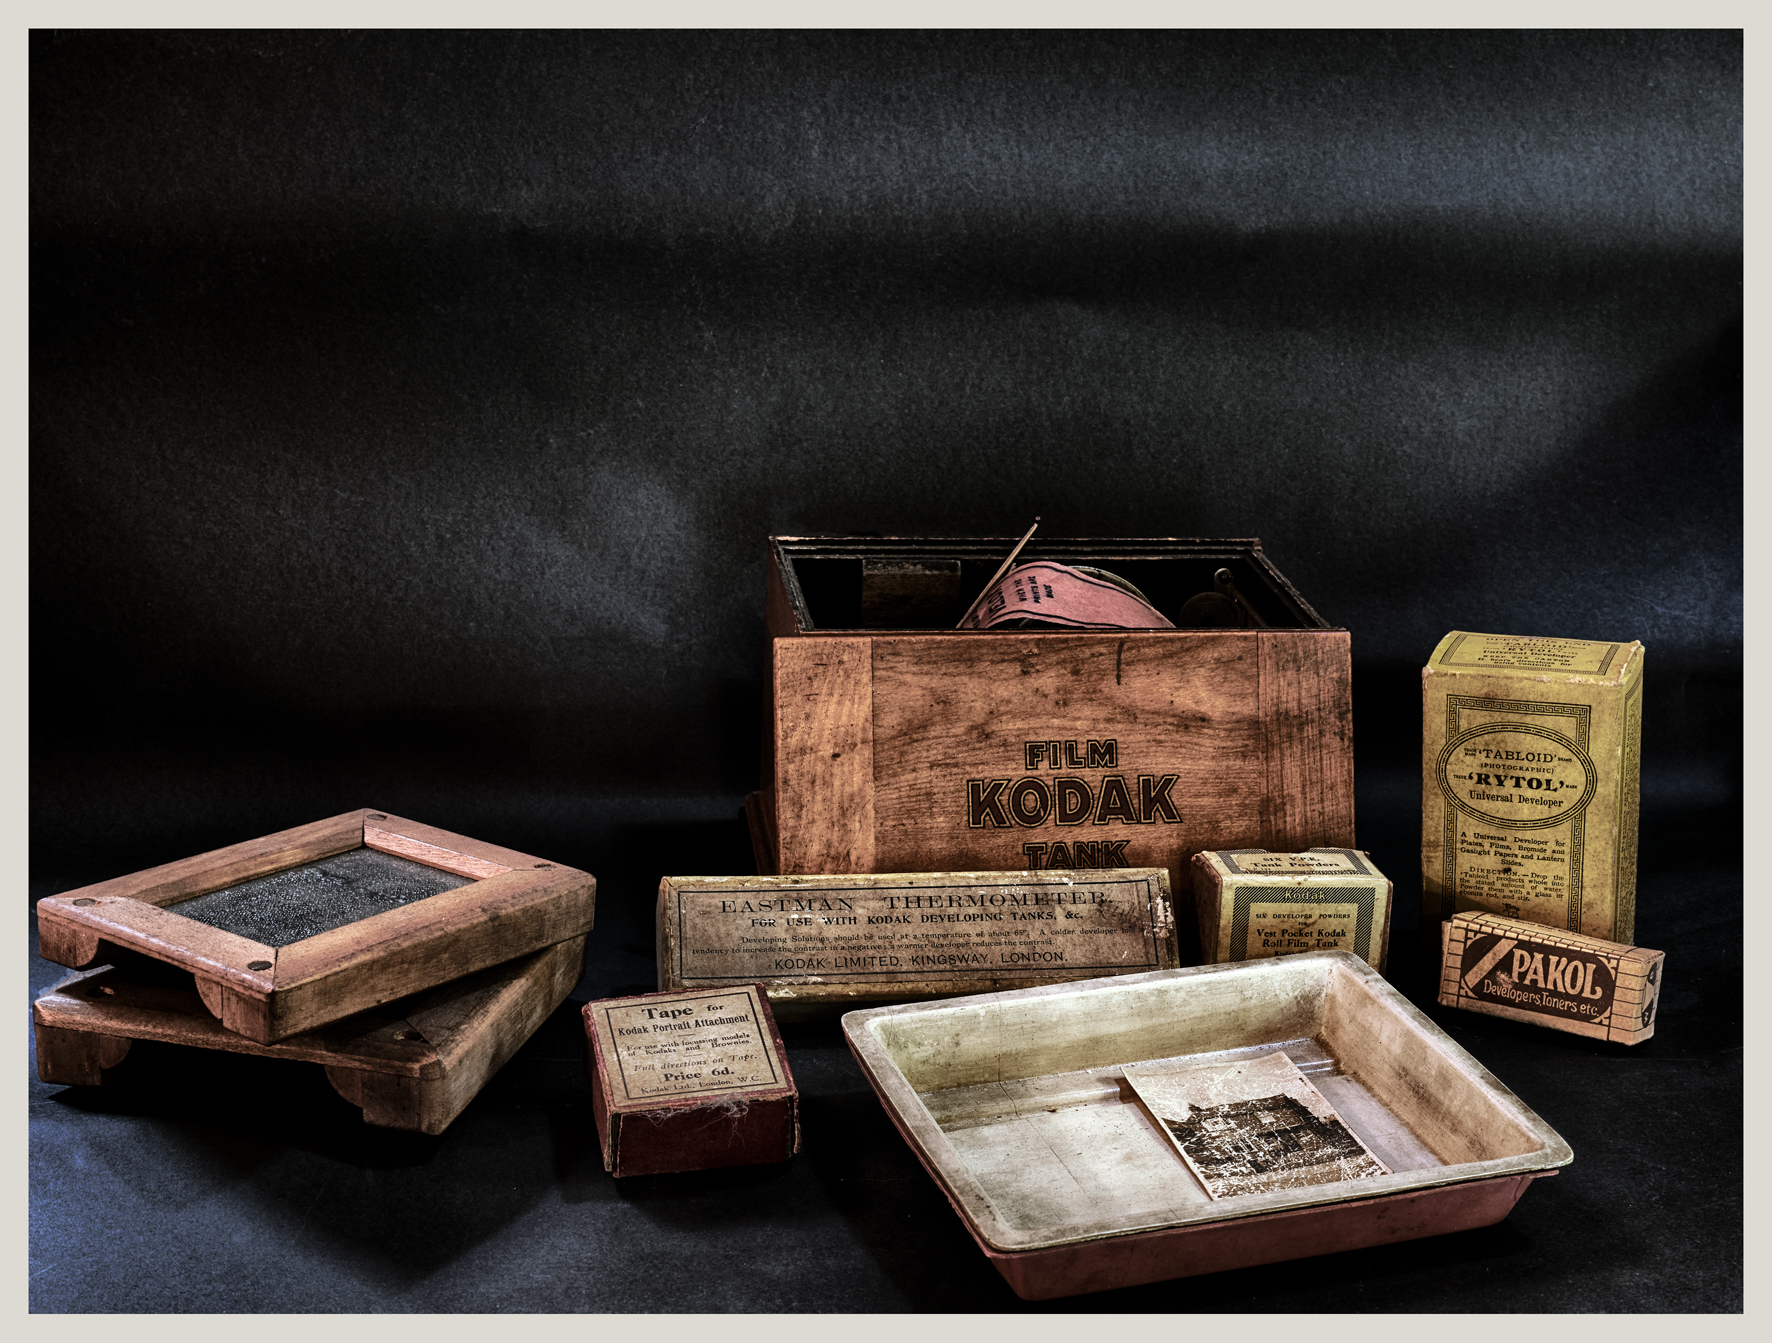 The photoamator kit...